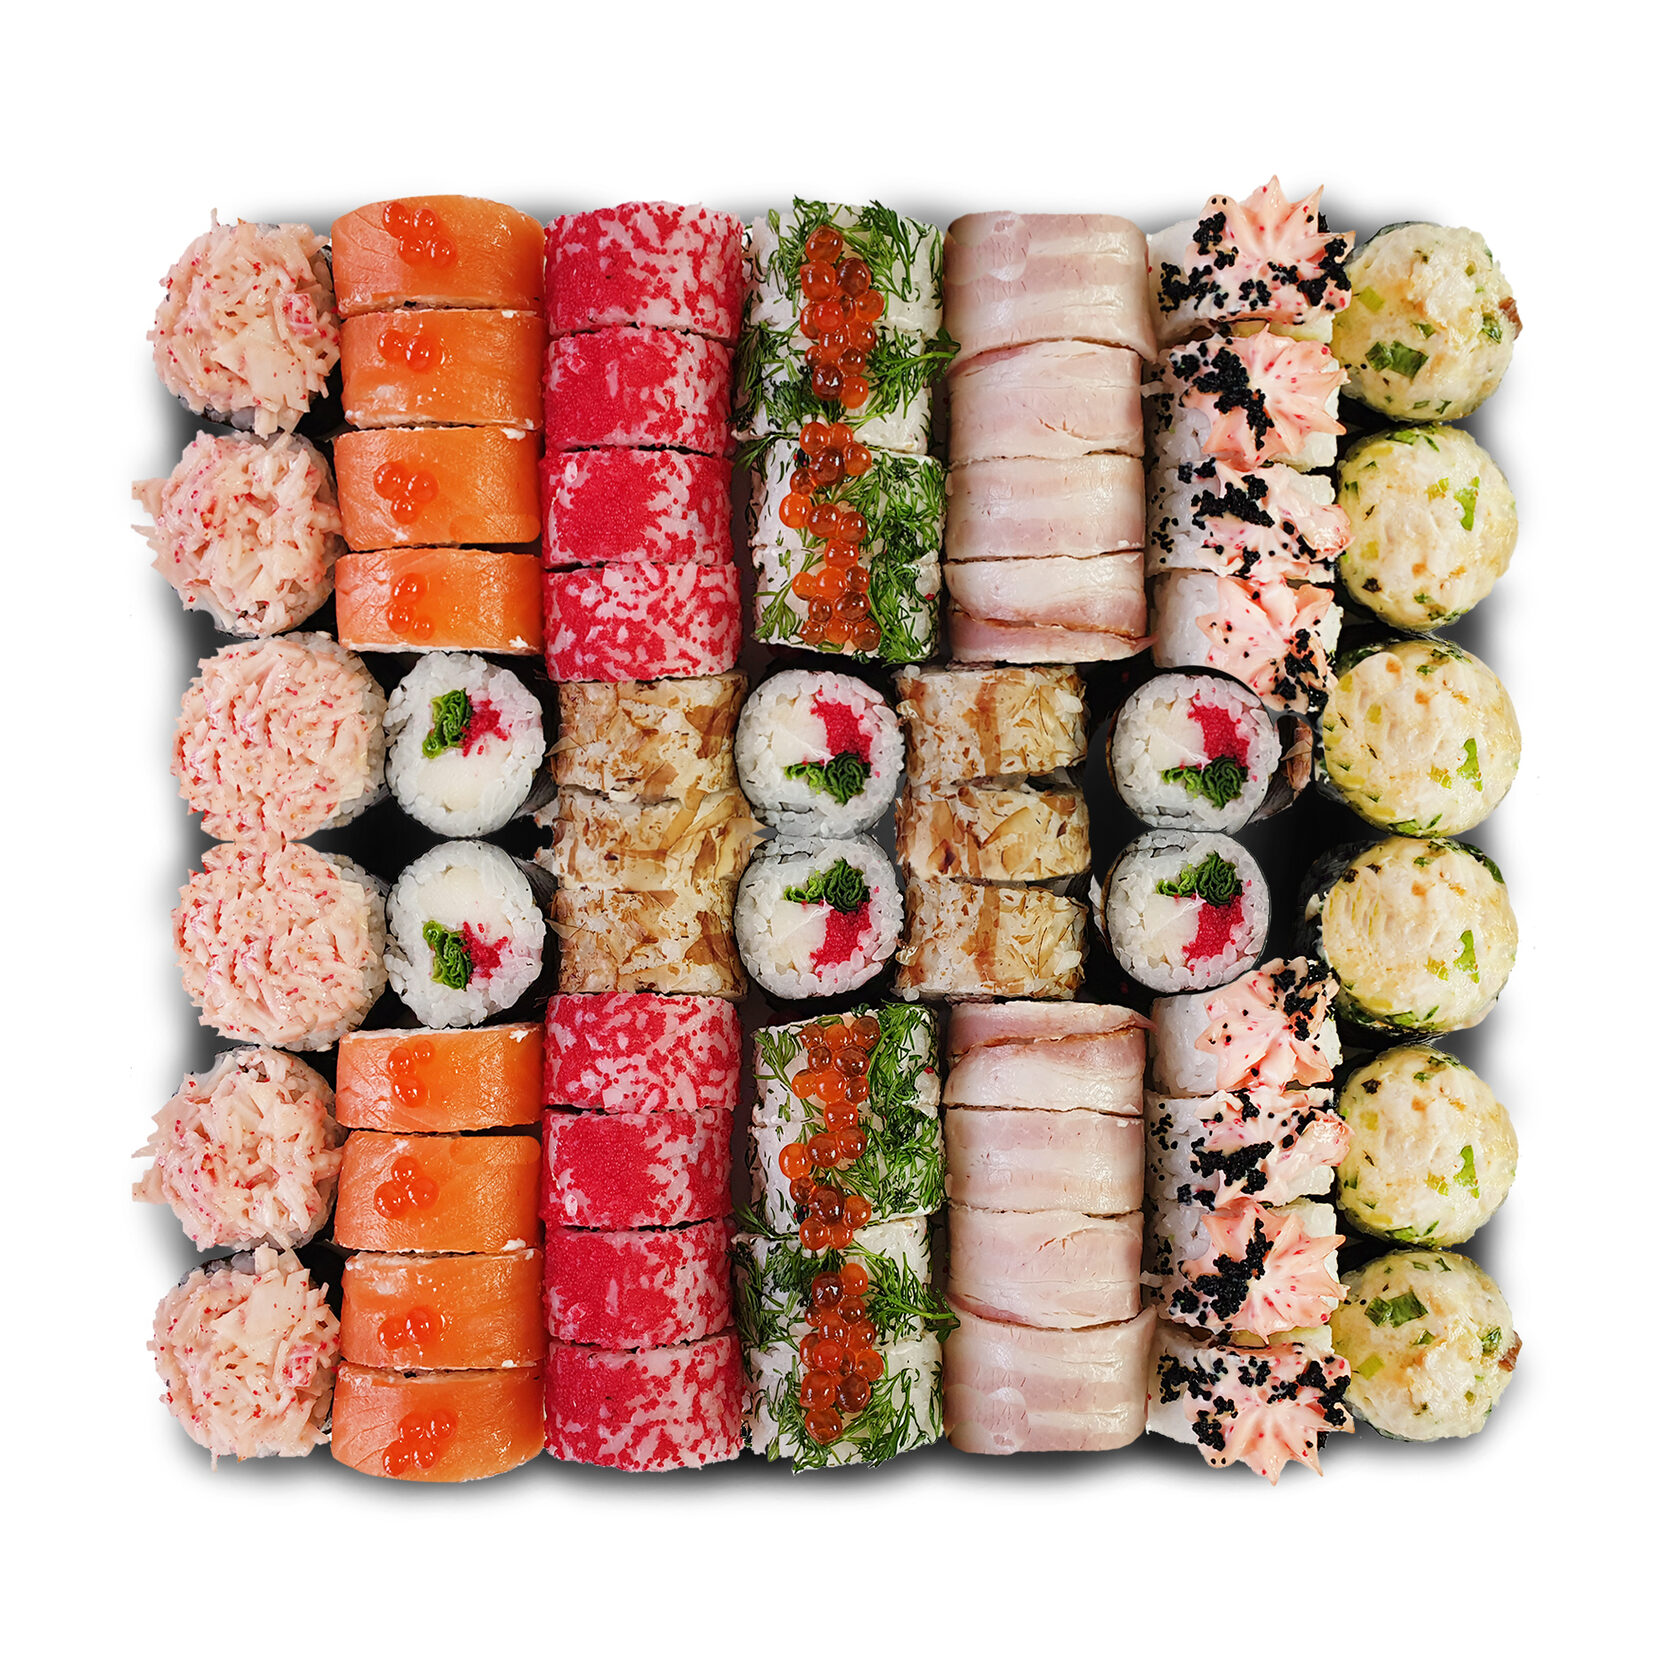 Заказать суши в краснодаре с бесплатной доставкой суши (119) фото